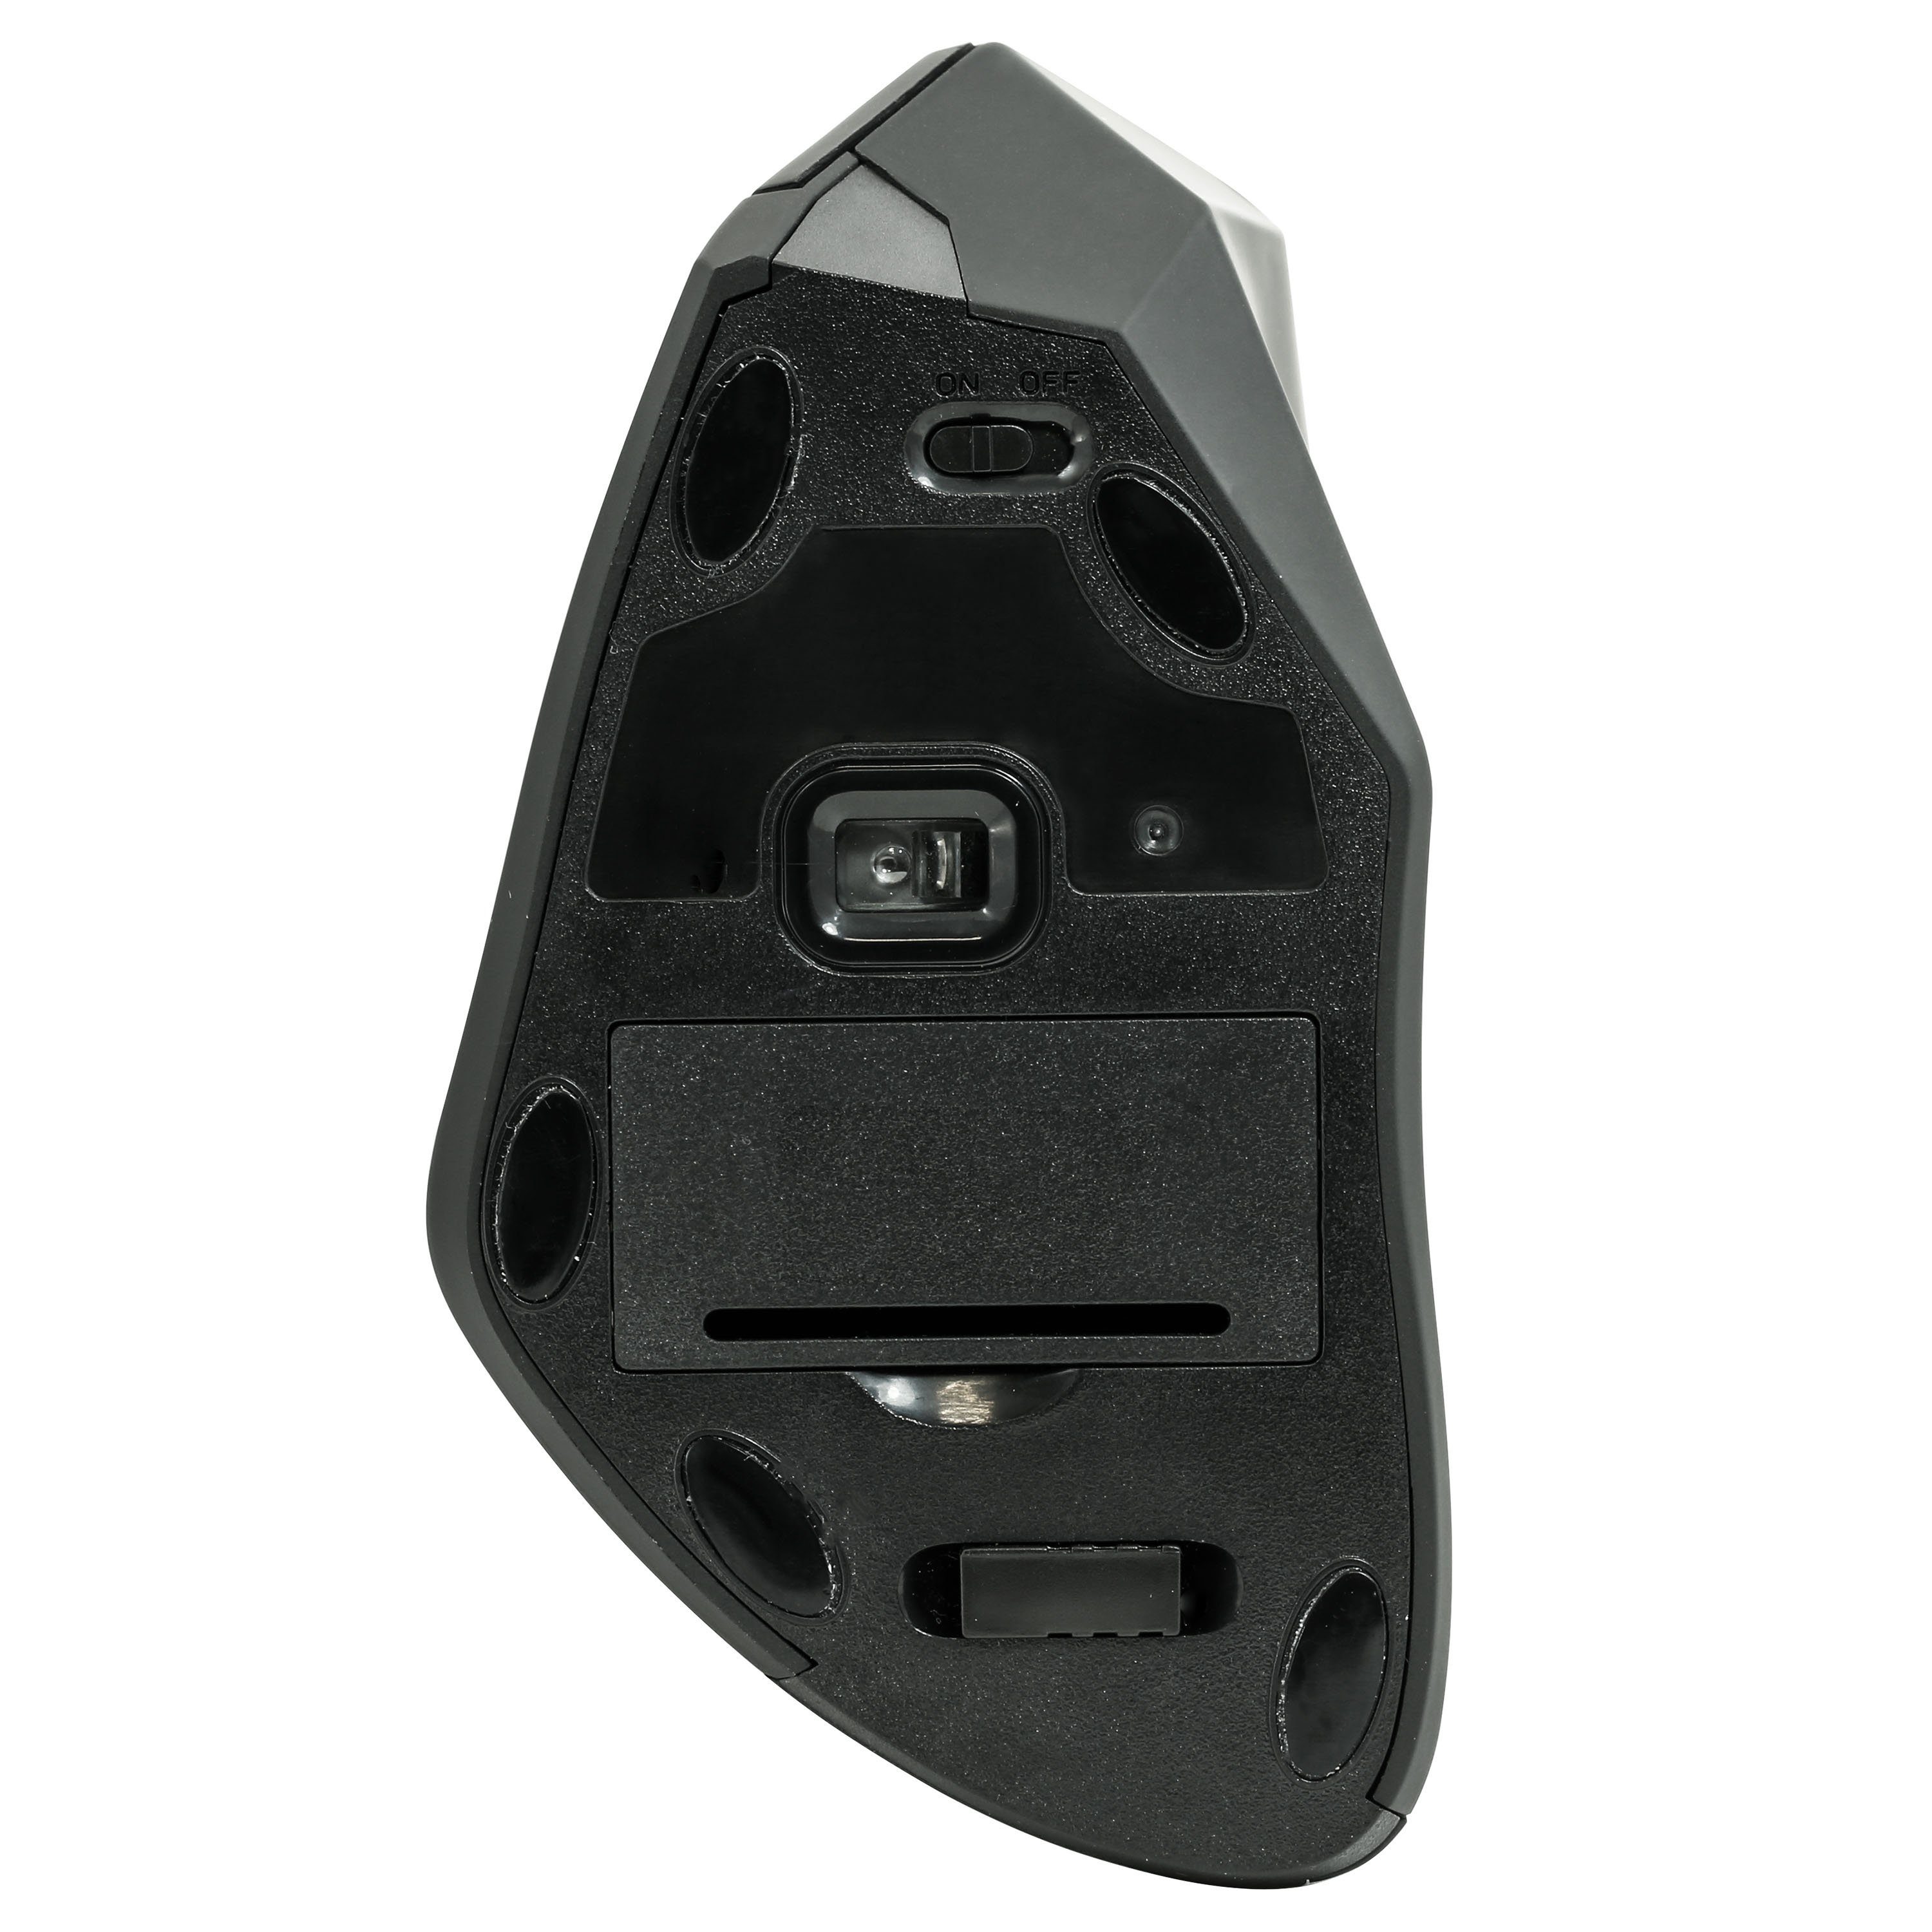 CSL ergonomische Maus (Funk, GHz, Maus-/Tennisarm Vertikal ergonomische gegen RSI Mouse Syndrom) 2,4